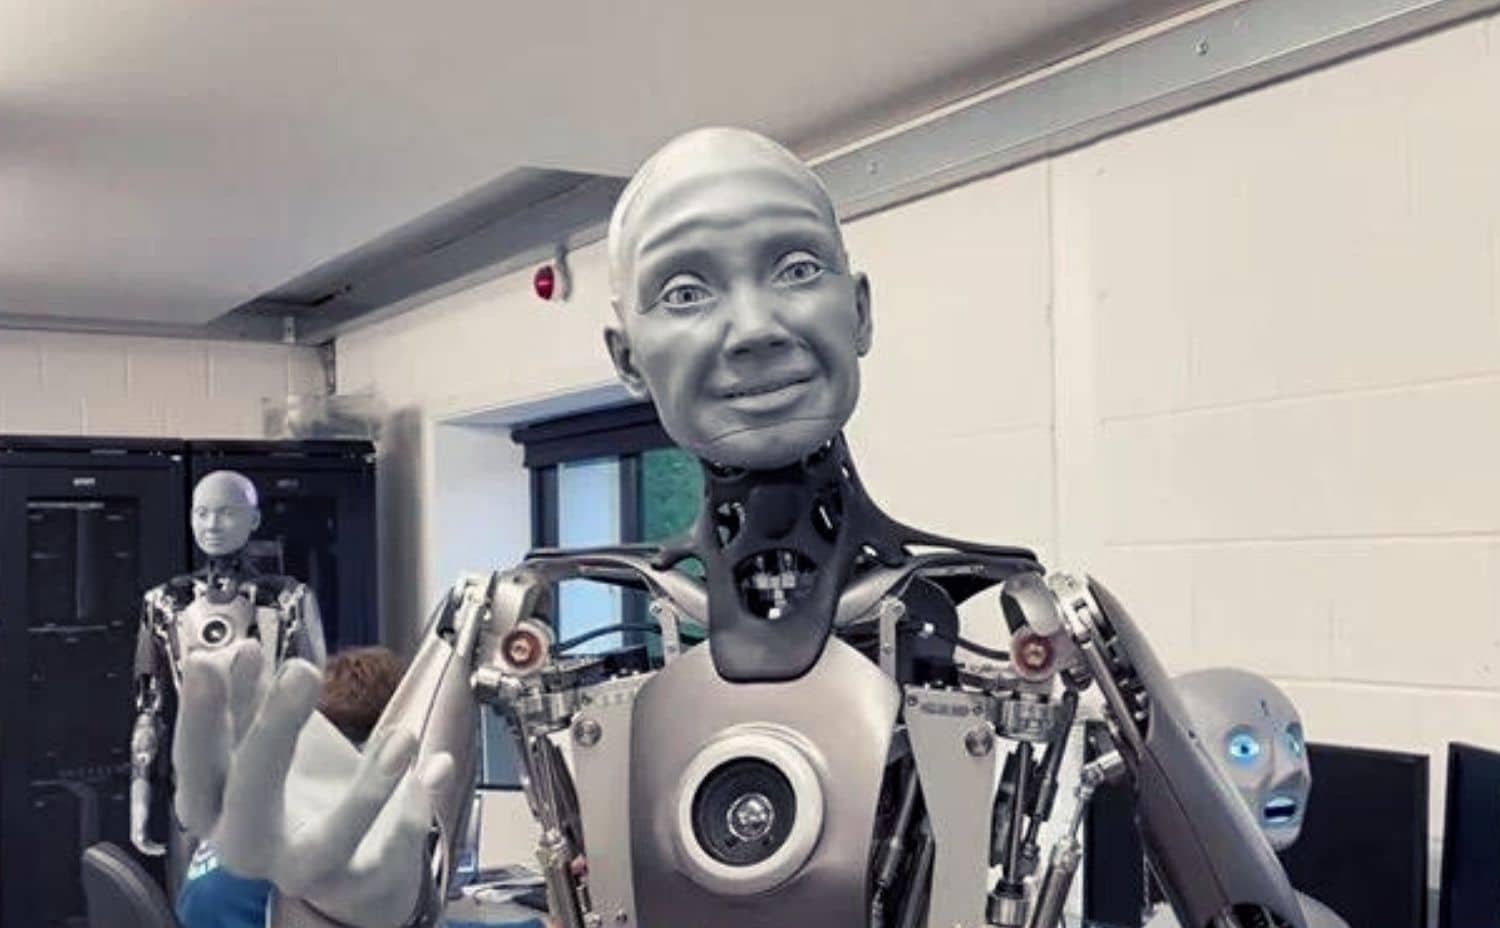 روبوت ameca يتفاعل مع البشر بسلوك بشري مماثل